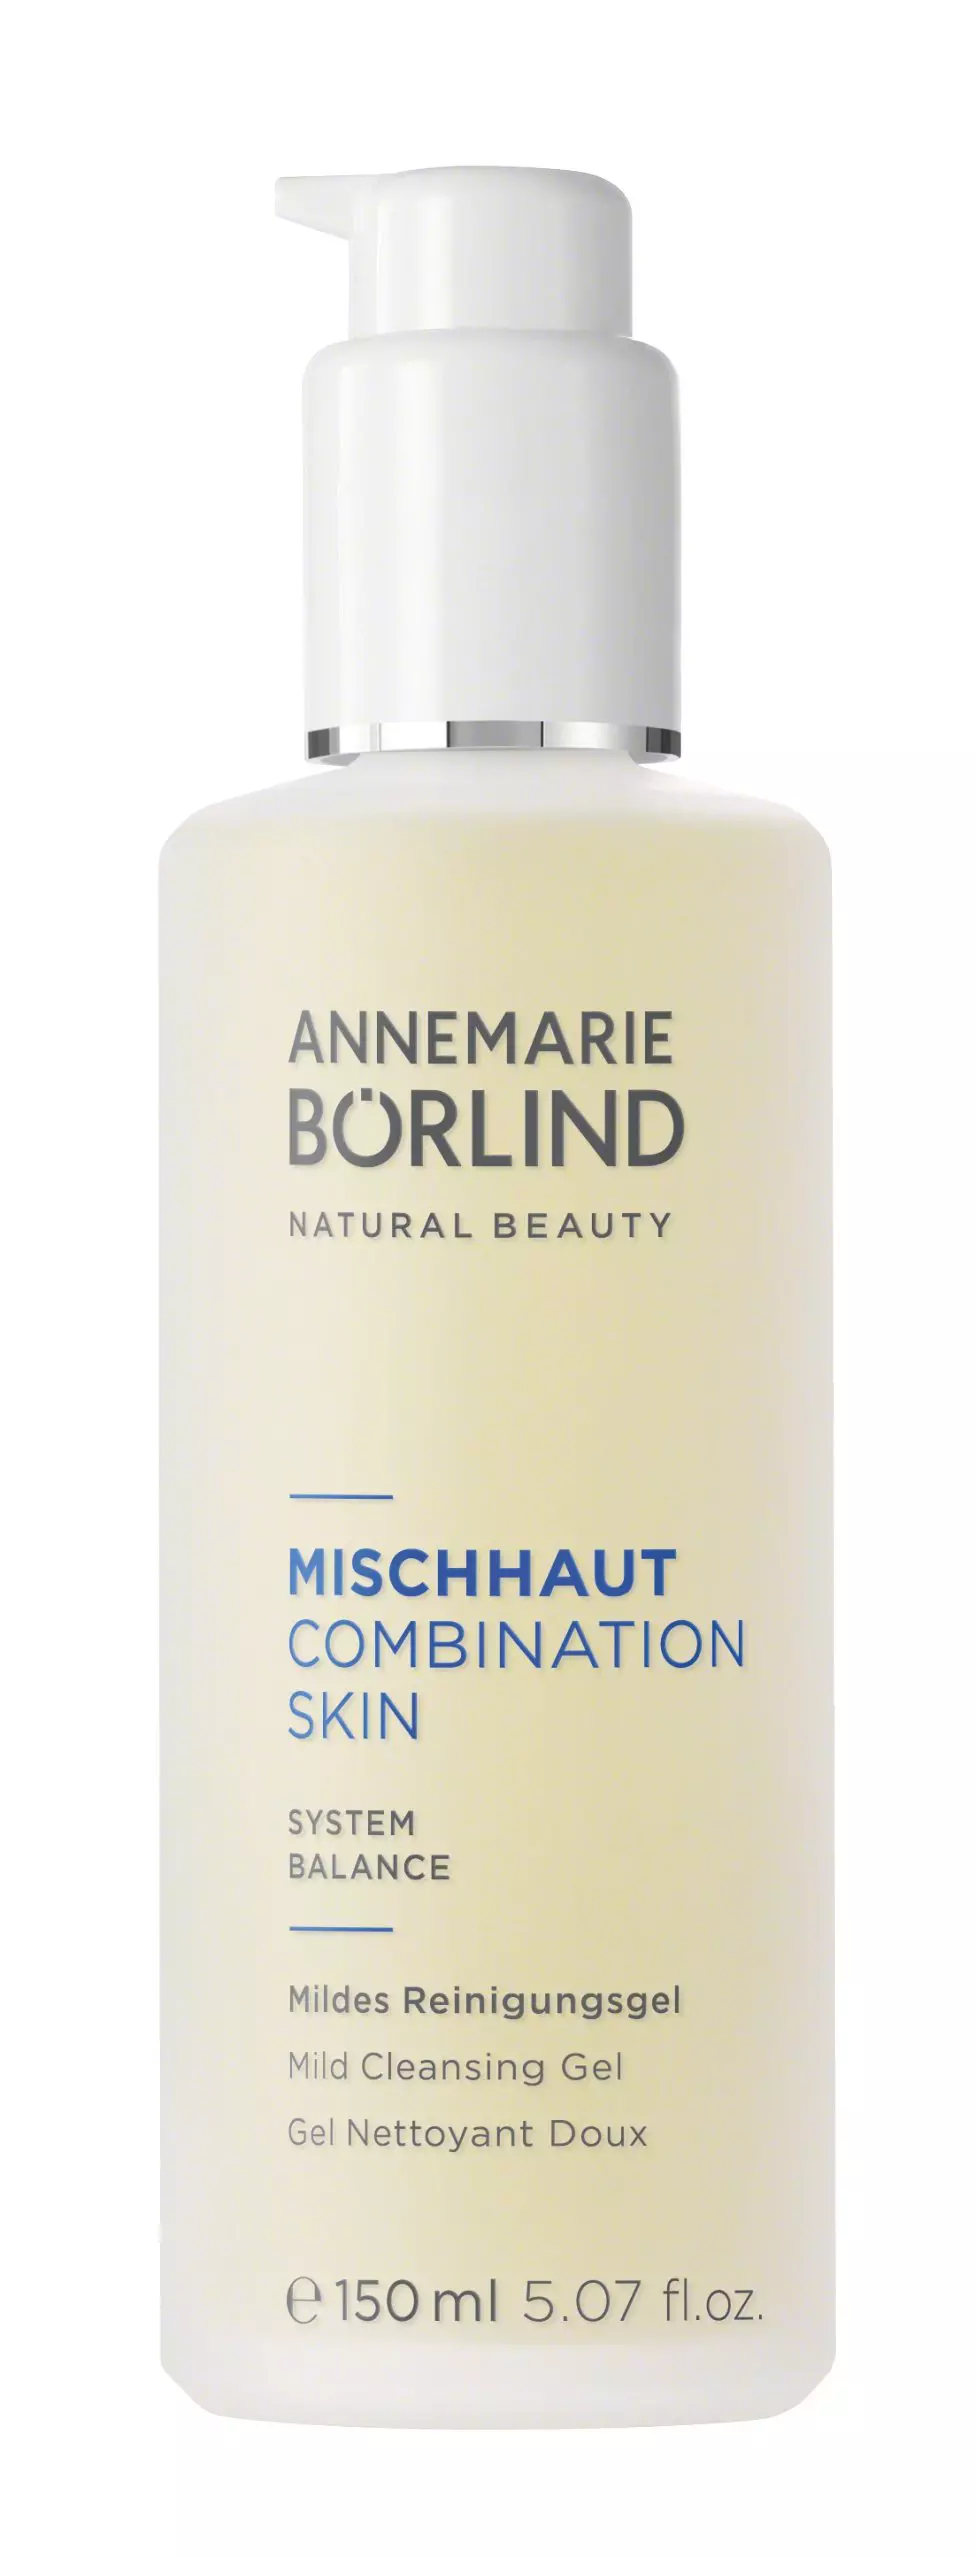 Annemarie Börlind Combination Skin Cleansinggel Ml